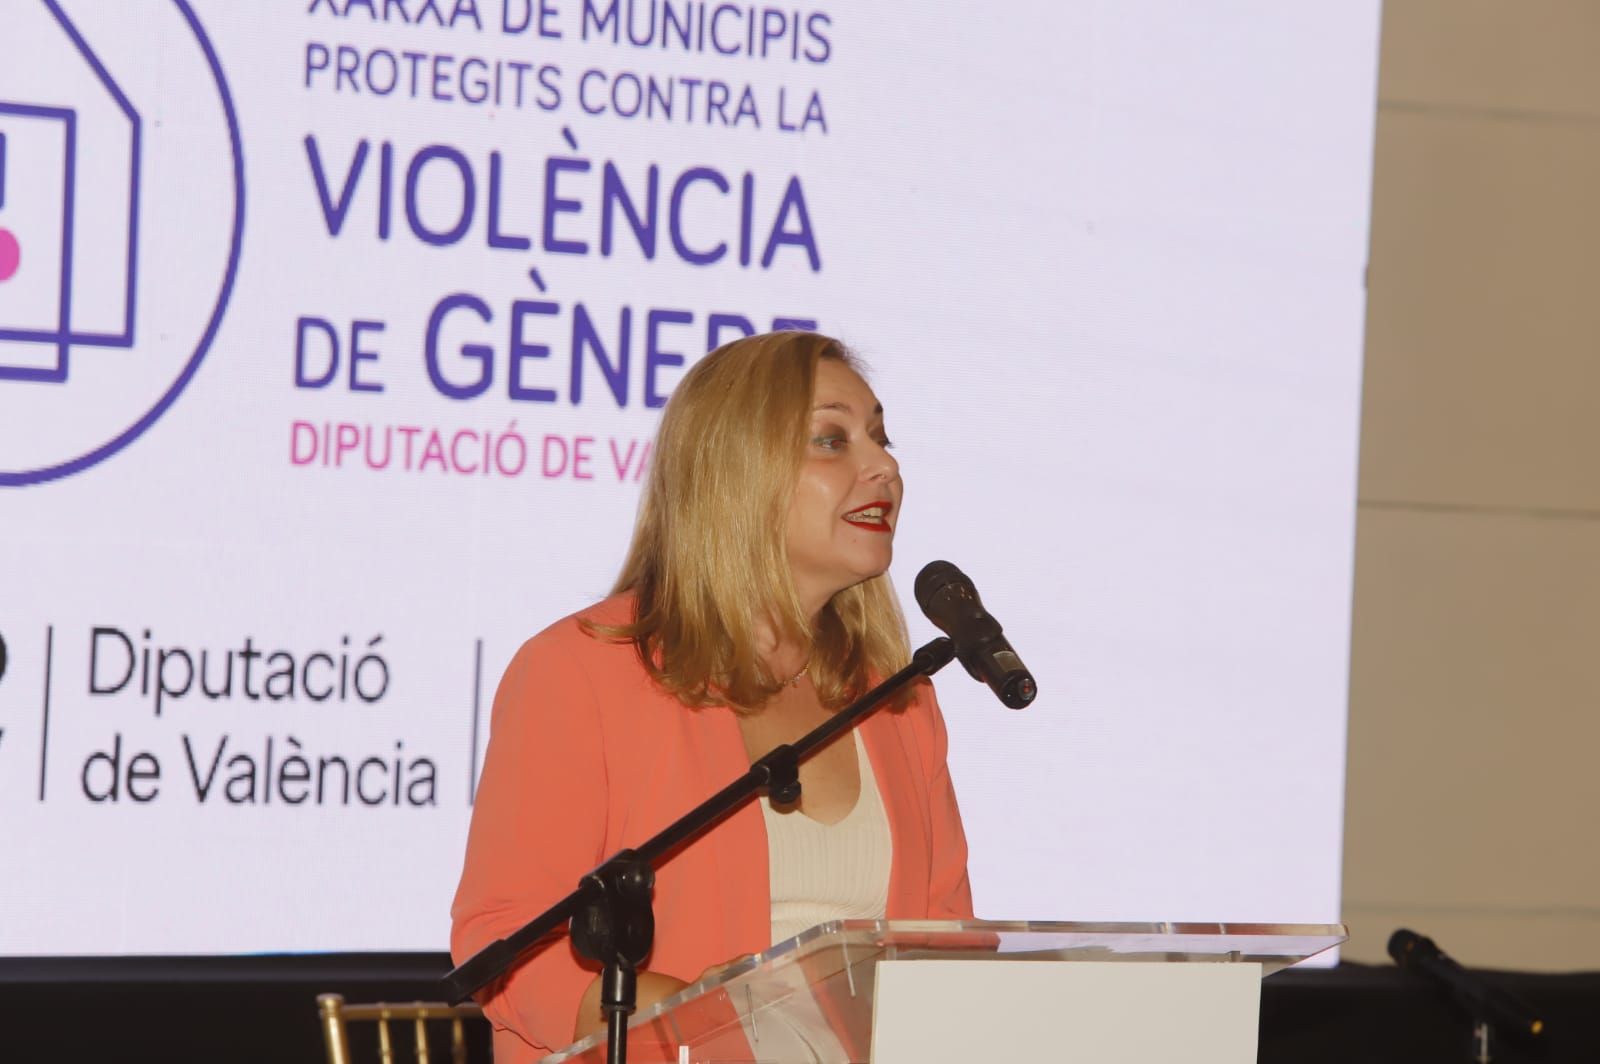 X asamblea de la Red de Municipios protegidos contra la Violencia de Género de la diputación